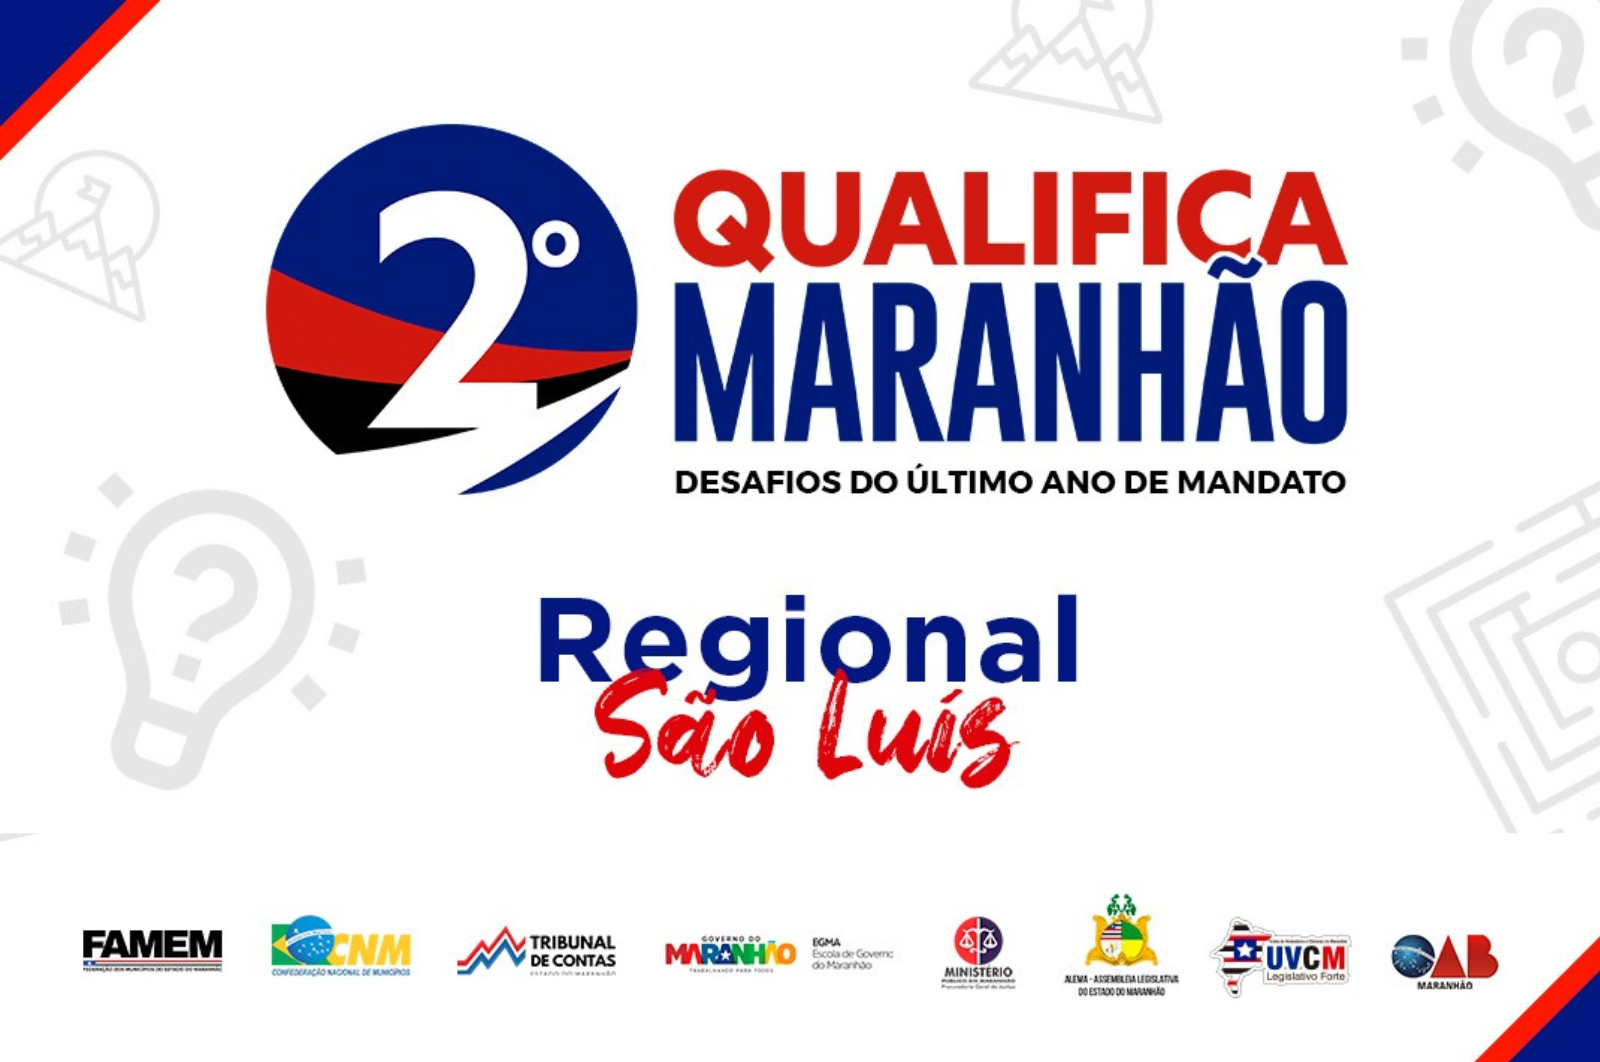 2º Qualifica Maranhão: Desafios do último ano de mandato (Regional São Luís)